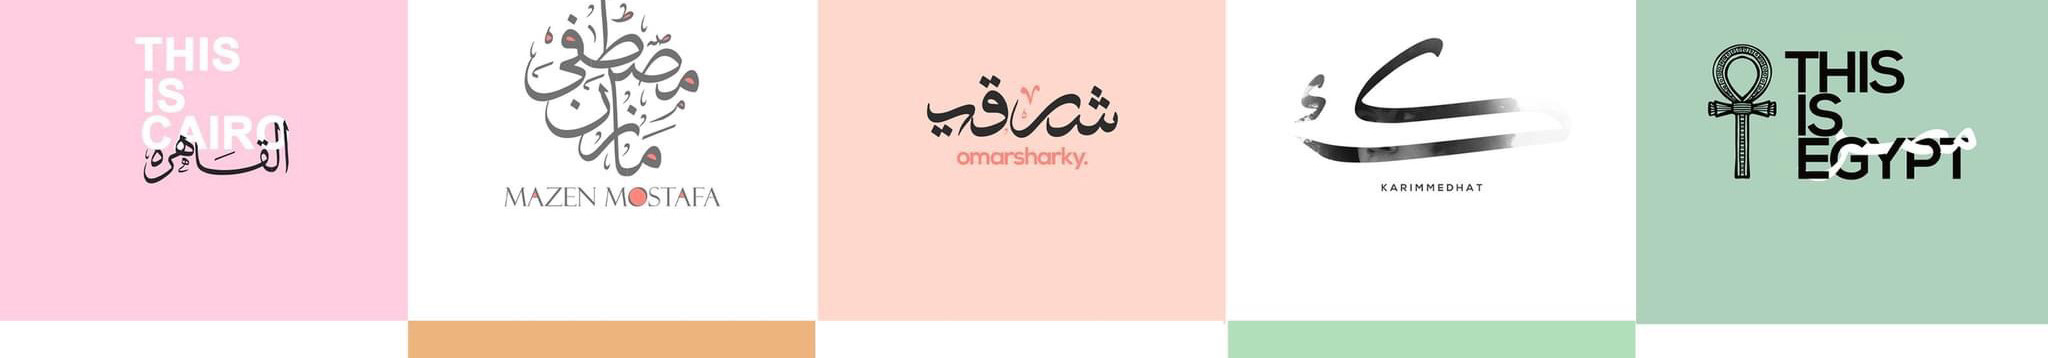 Profil-Banner von Usama Nabil ✪